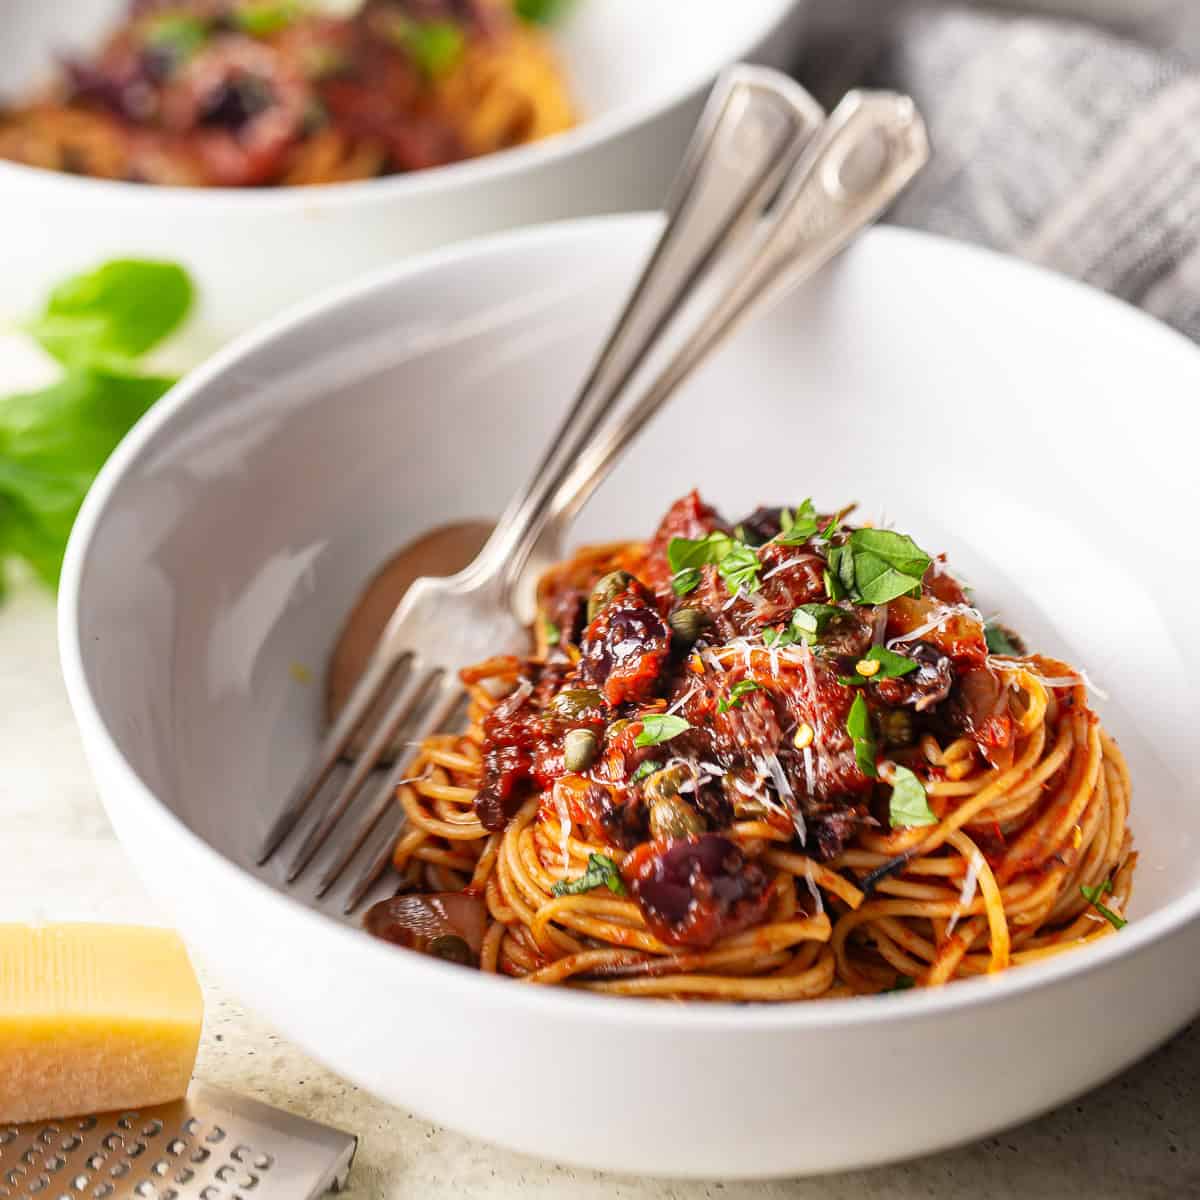 Spaghetti alla puttanesca nestled into a white ceramic bowl.